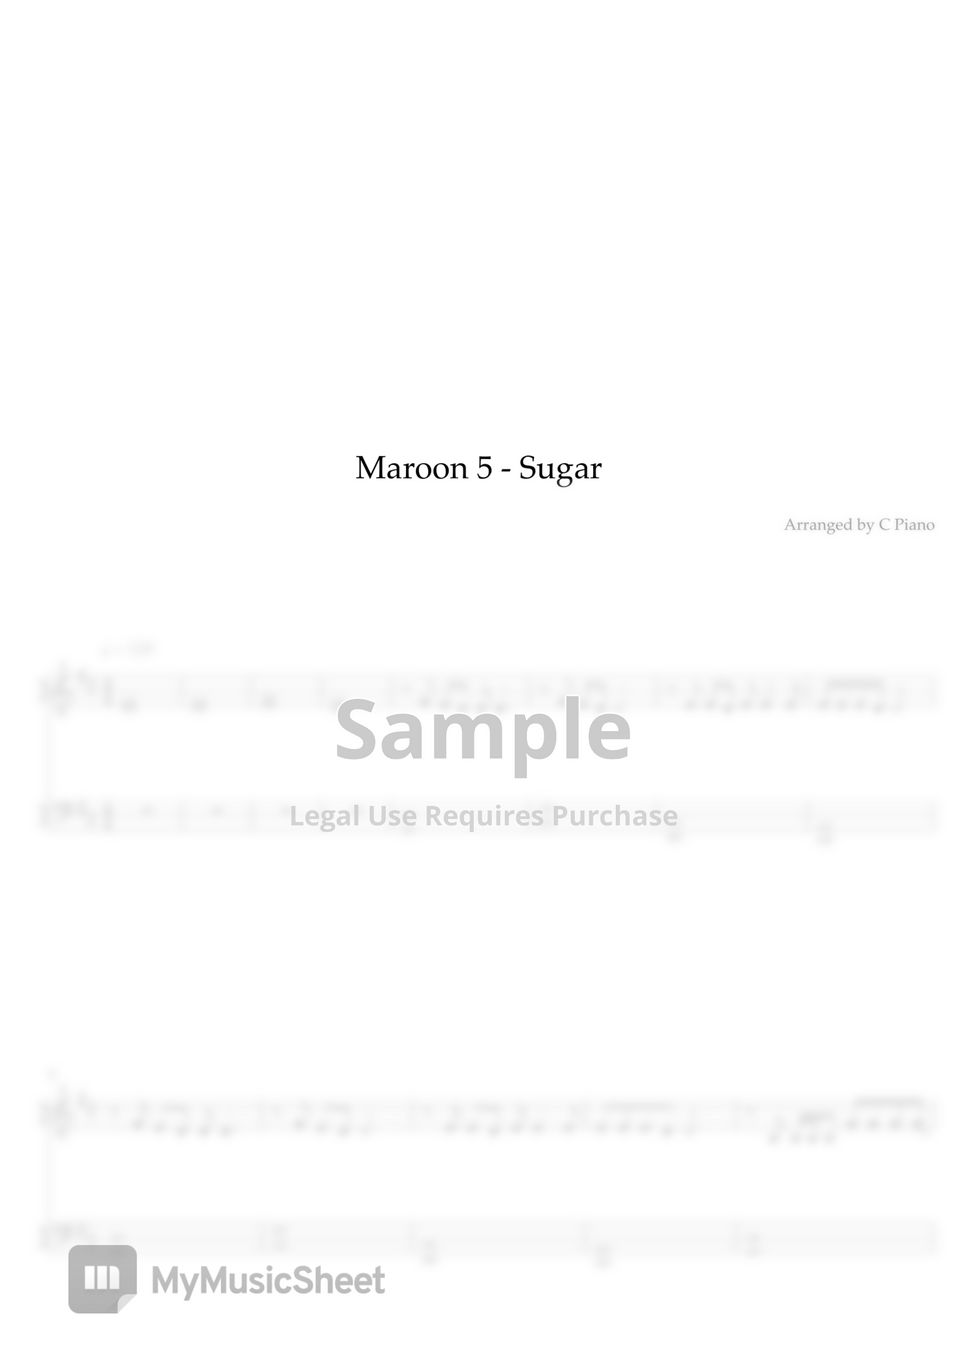 Sugar - Maroon 5 (Easy Version) by C Piano